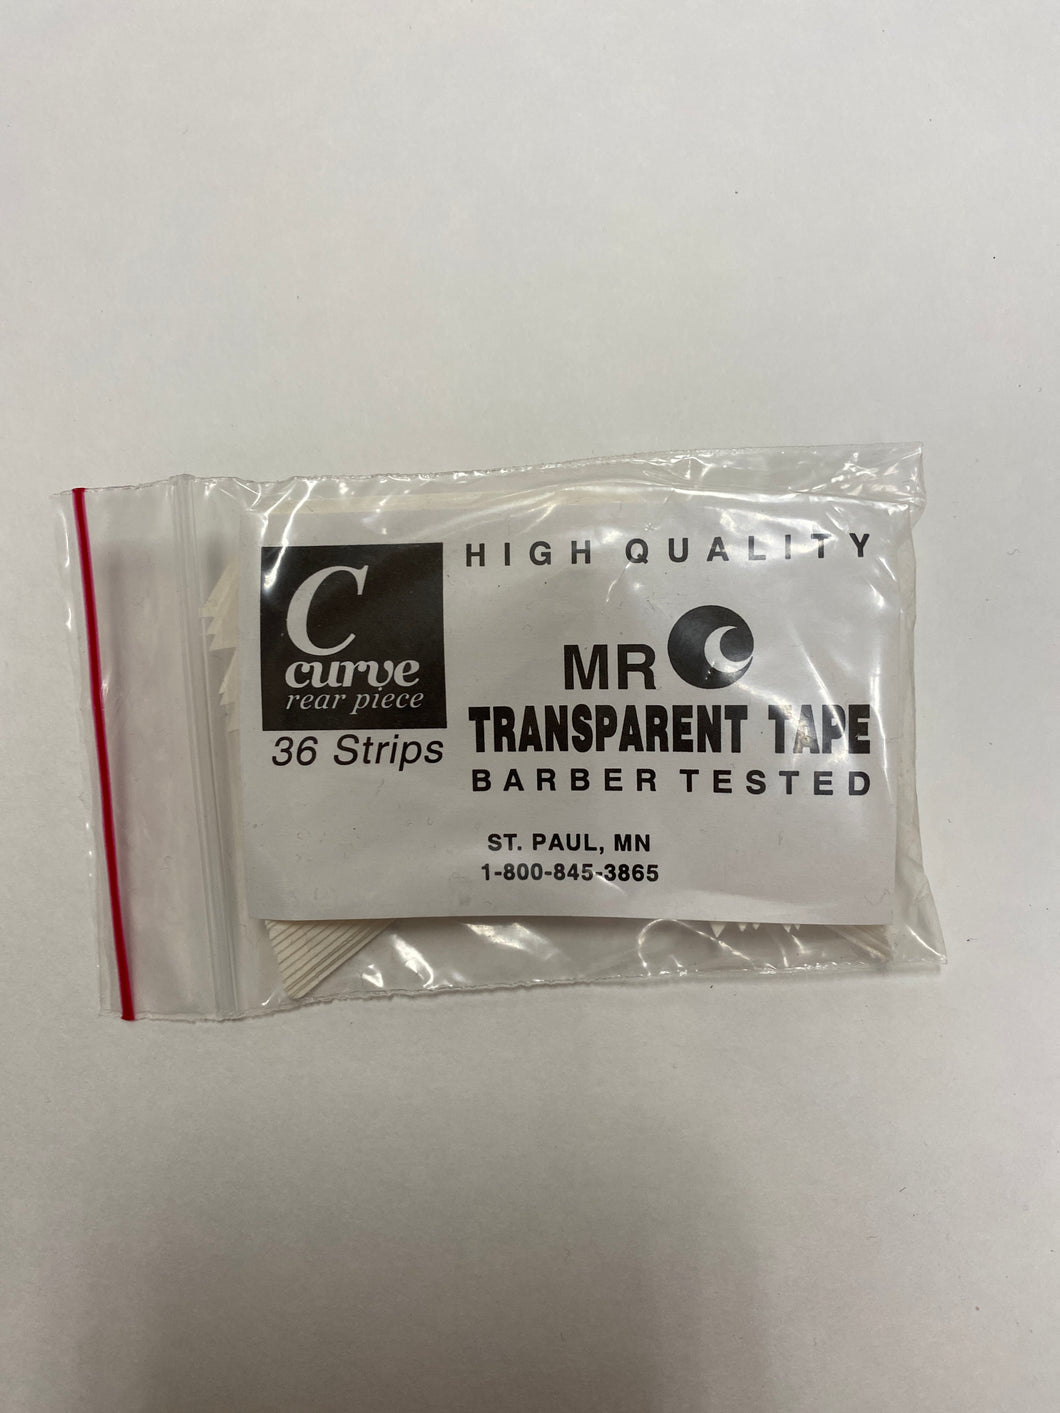 Mr. C Transparent tape C curve rear piece